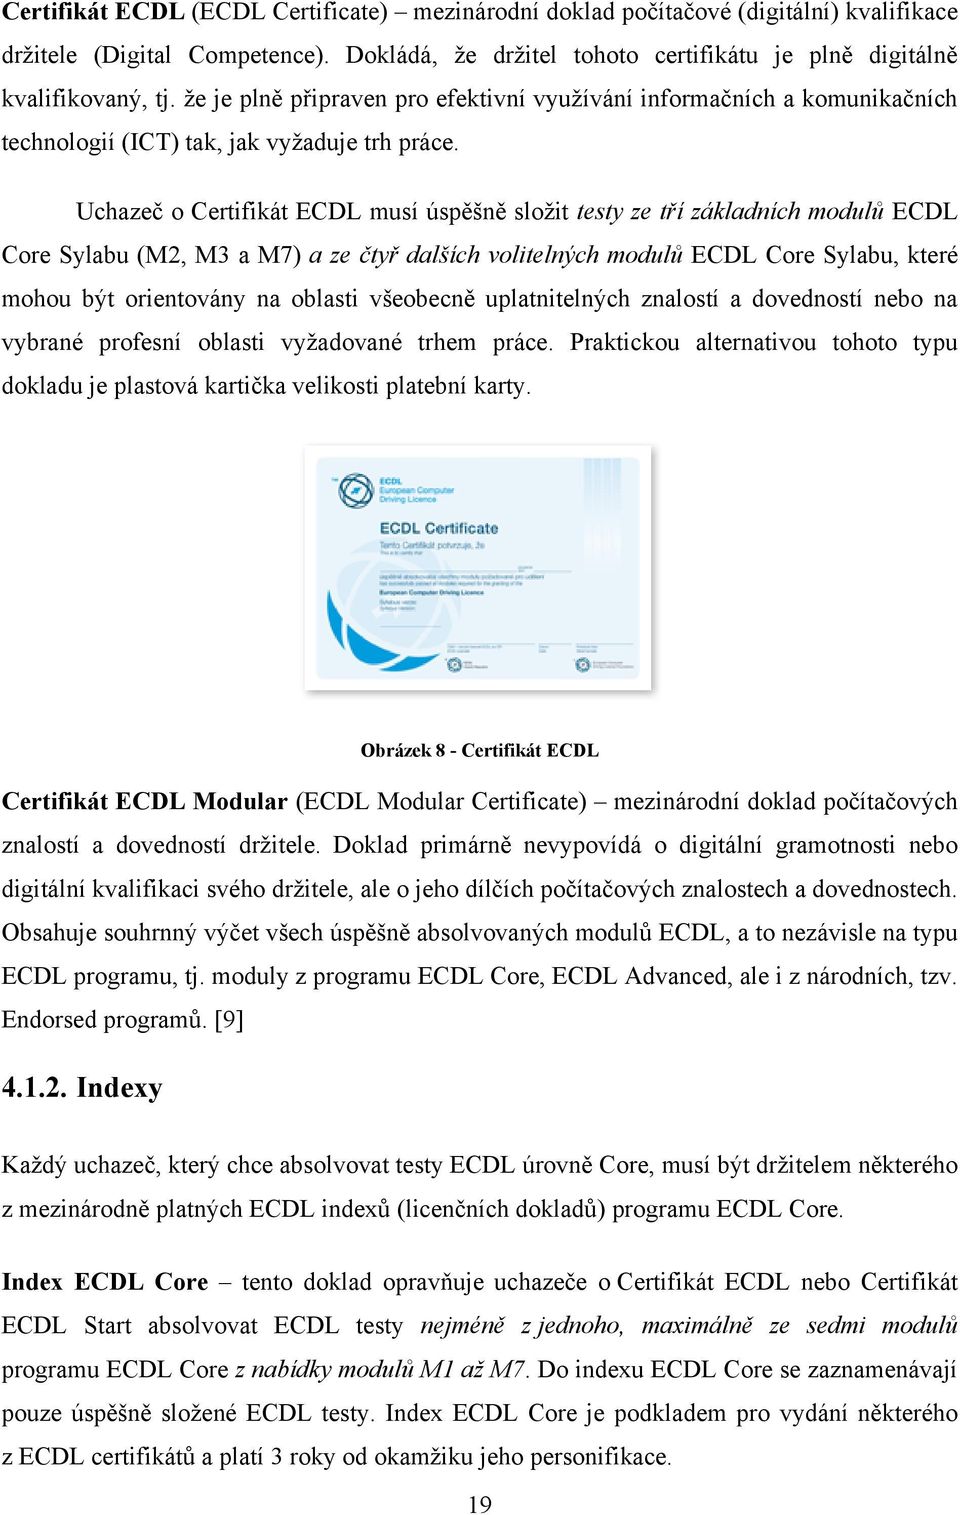 Uchazeč o Certifikát ECDL musí úspěšně sloţit testy ze tří základních modulů ECDL Core Sylabu (M2, M3 a M7) a ze čtyř dalších volitelných modulů ECDL Core Sylabu, které mohou být orientovány na